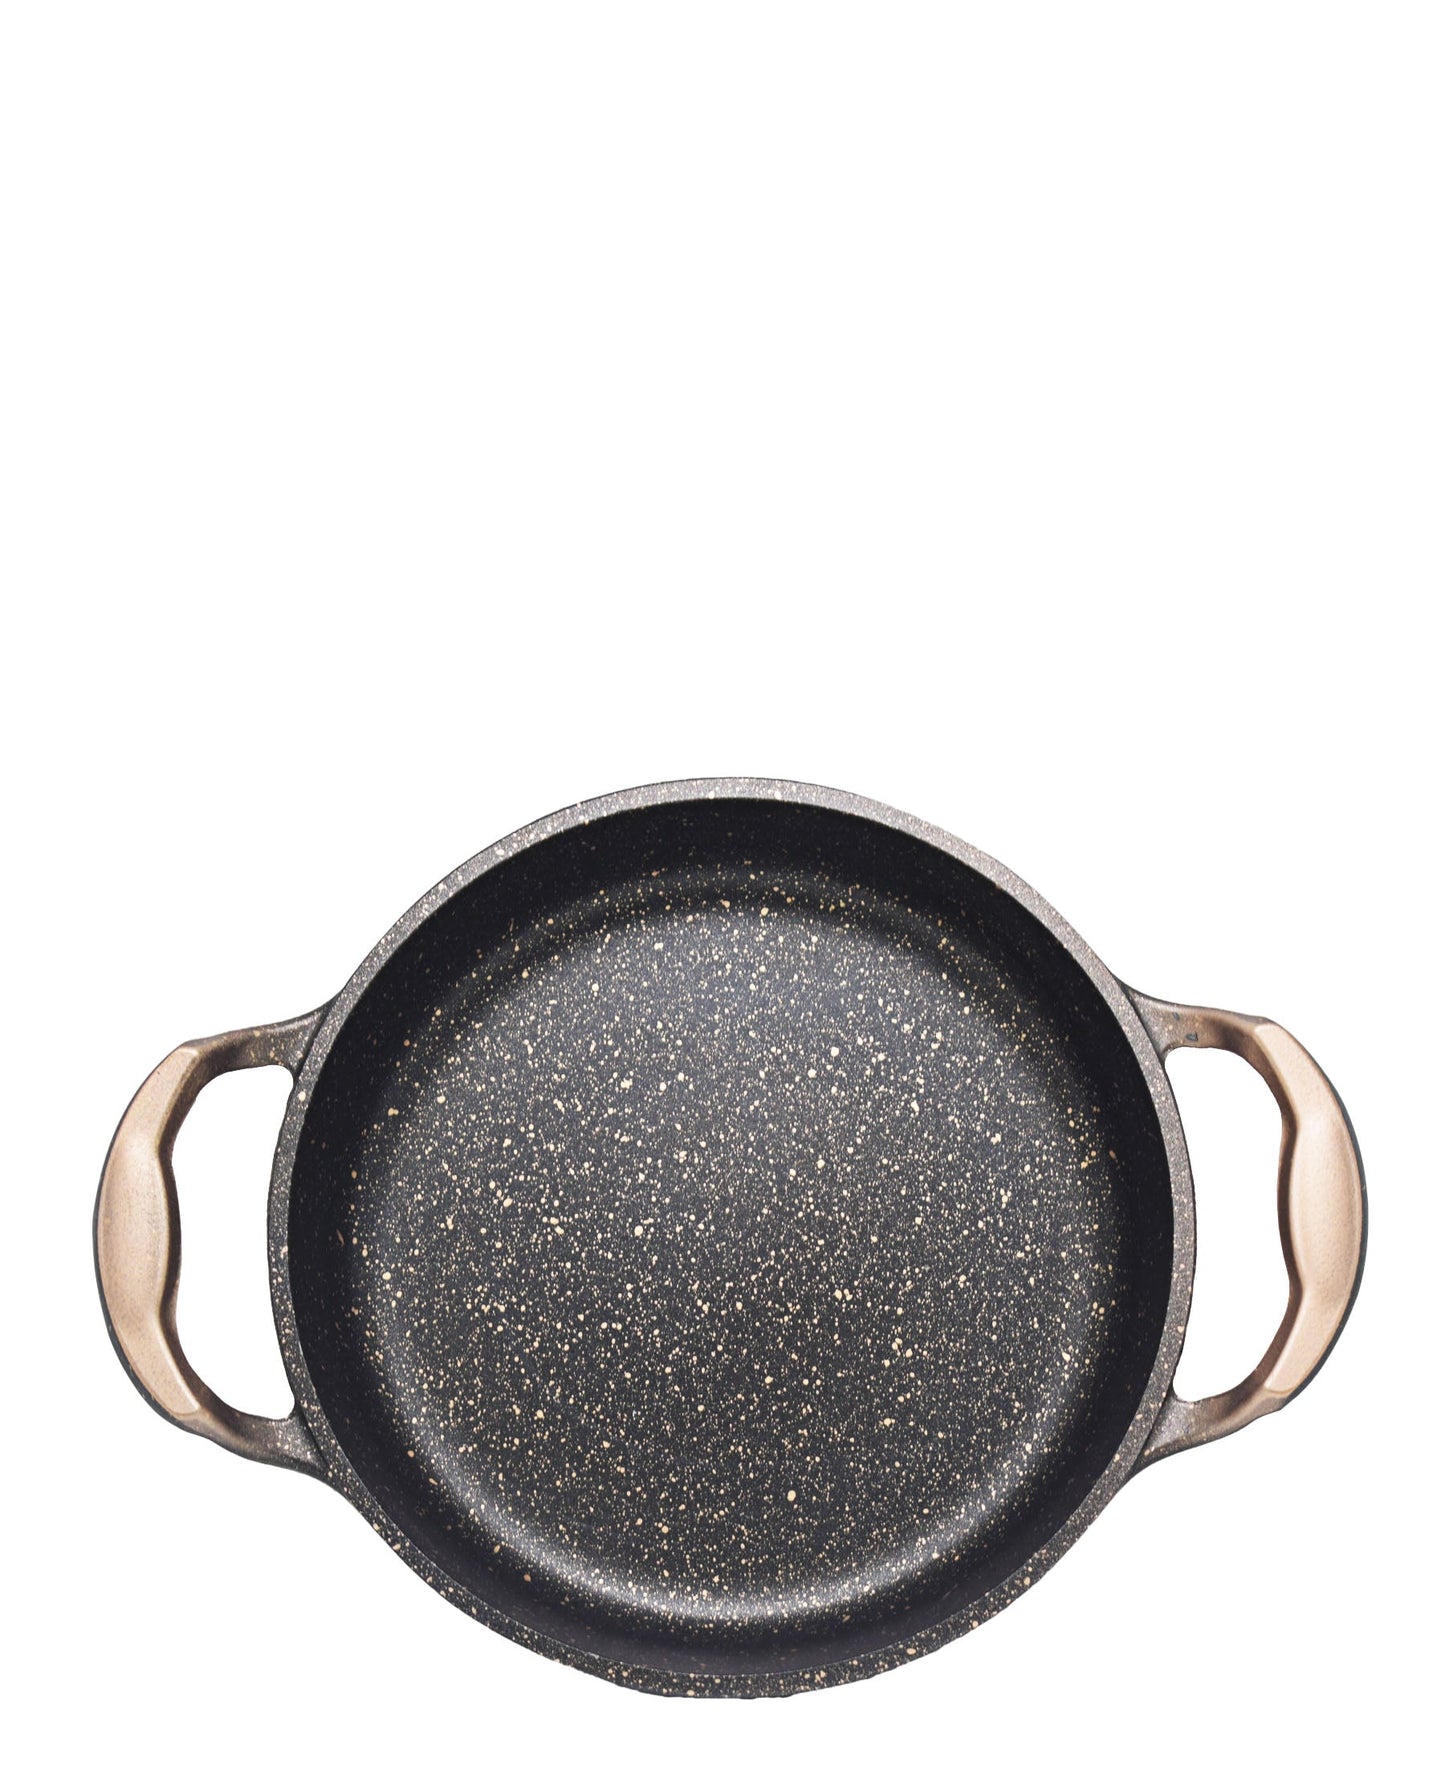 OMS Non Stick 20cm Granite Egg Pan - Copper